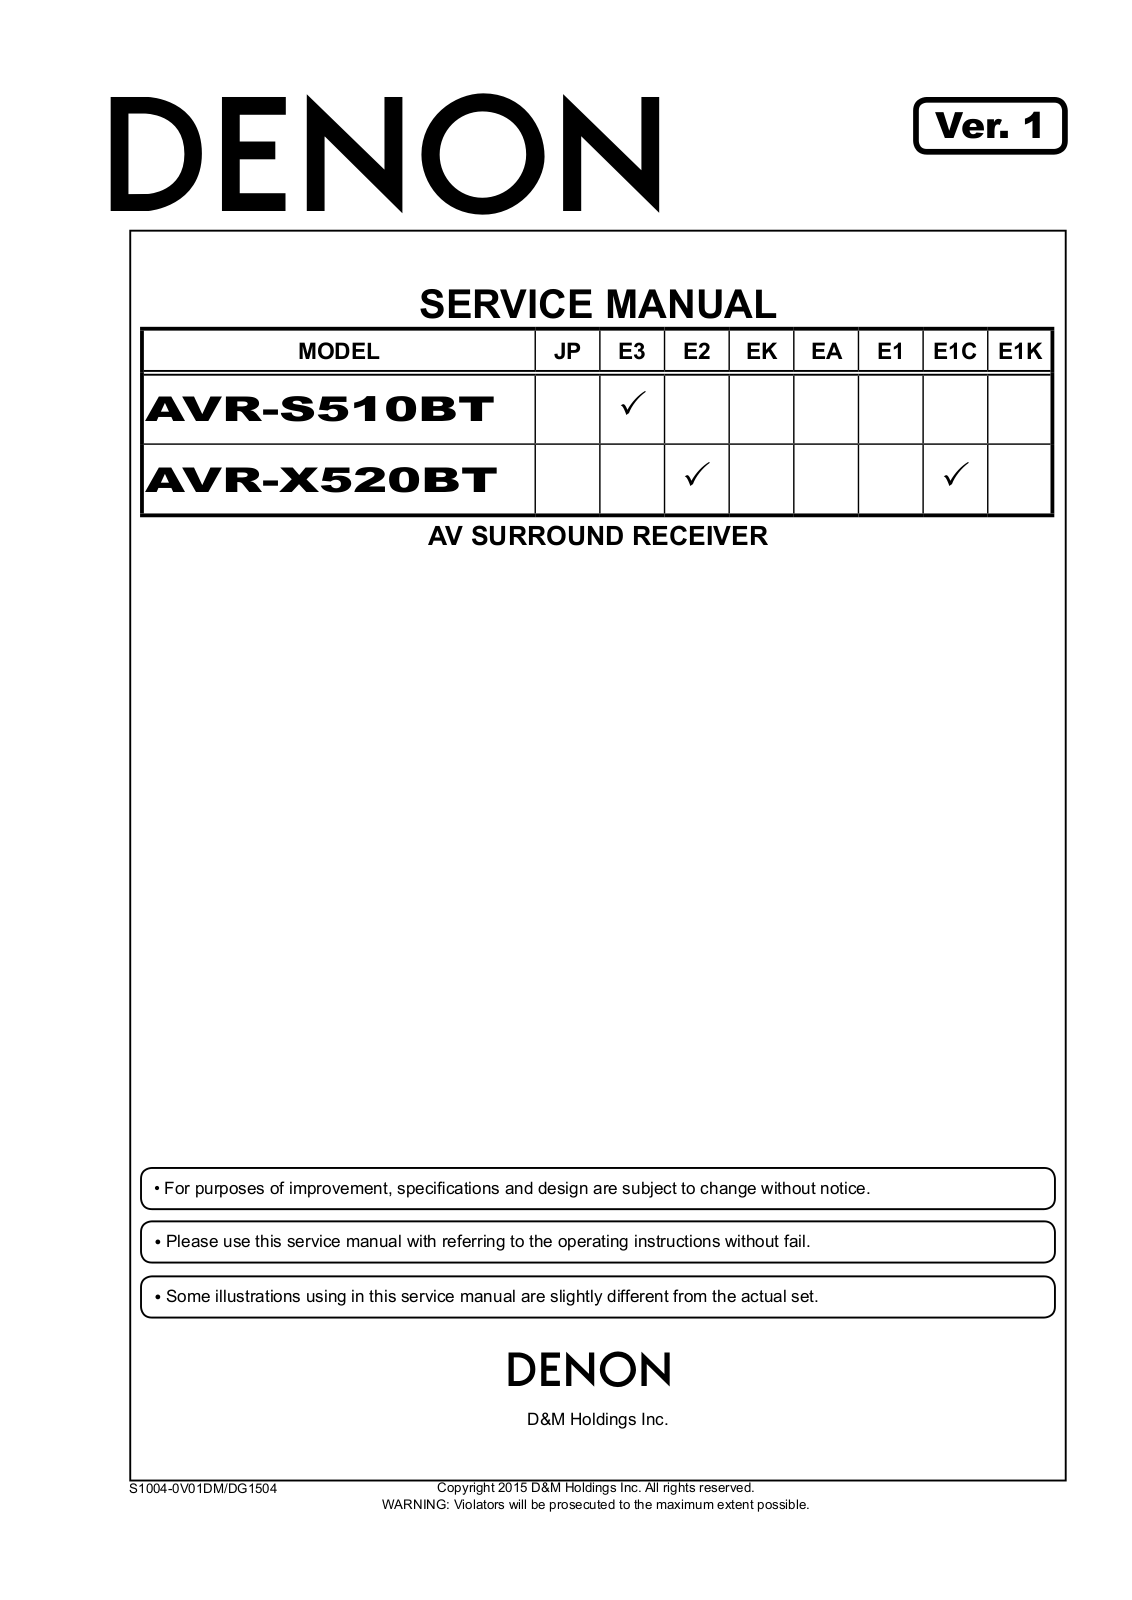 Denon AVR-S510BT, AVR-X520BT Service manual